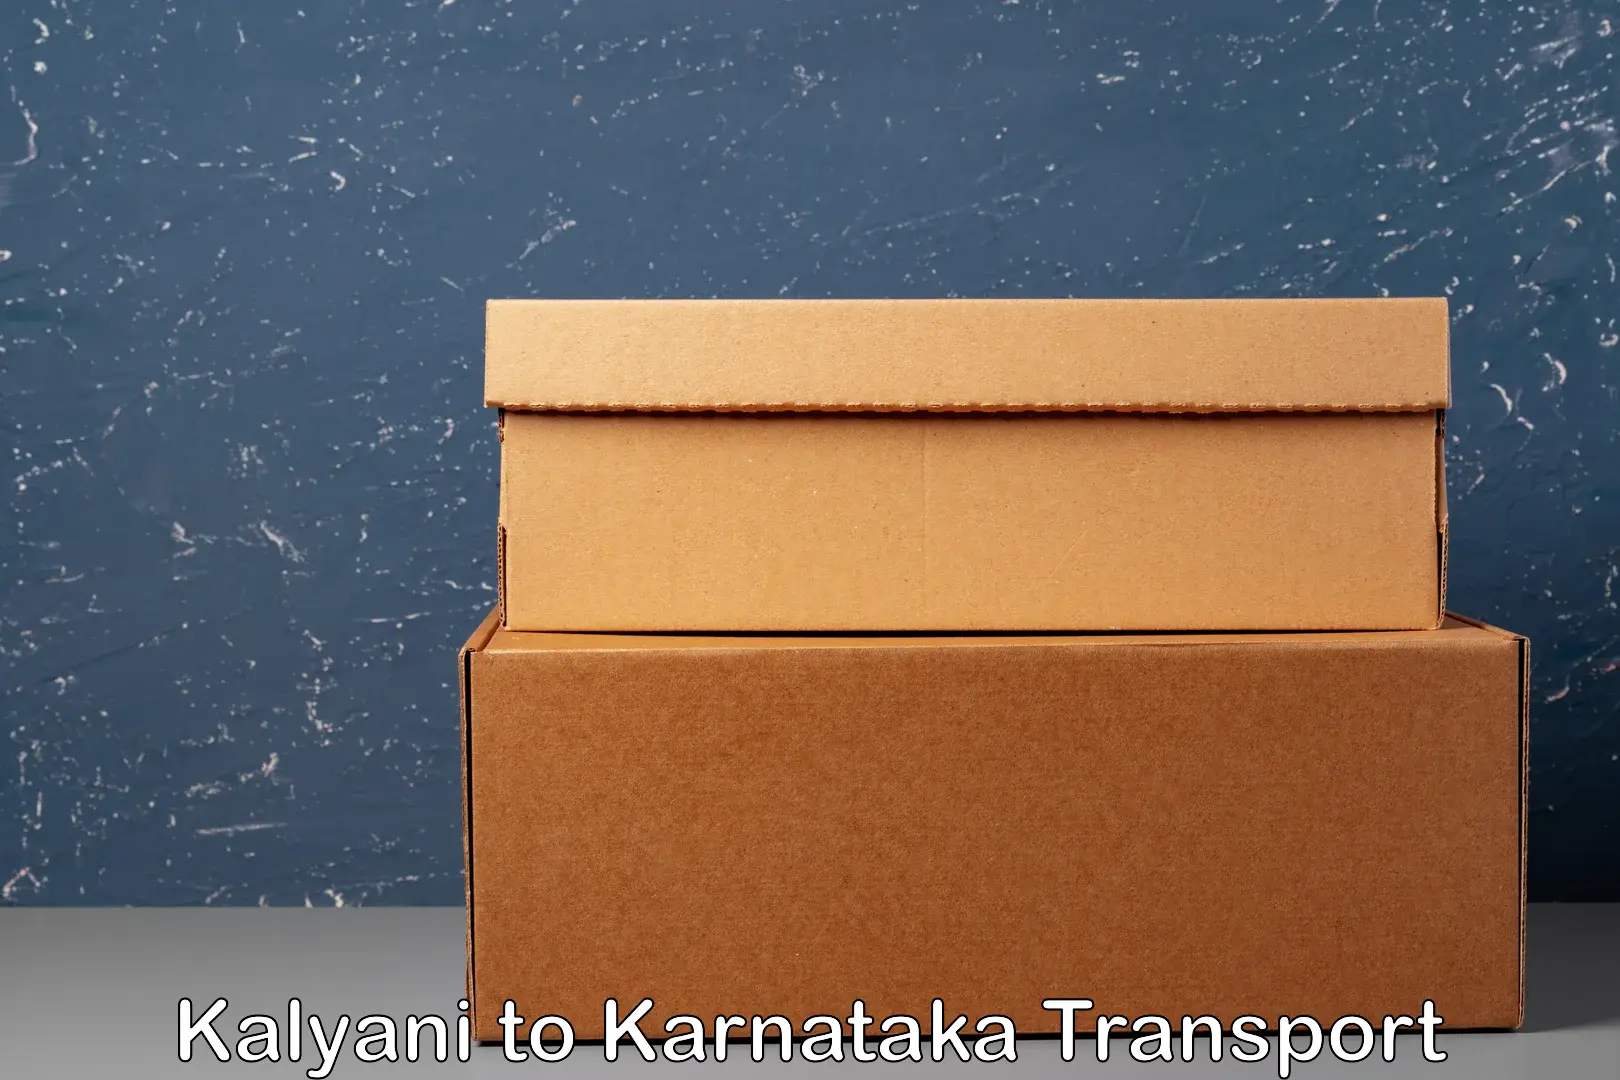 Sending bike to another city Kalyani to Karnataka